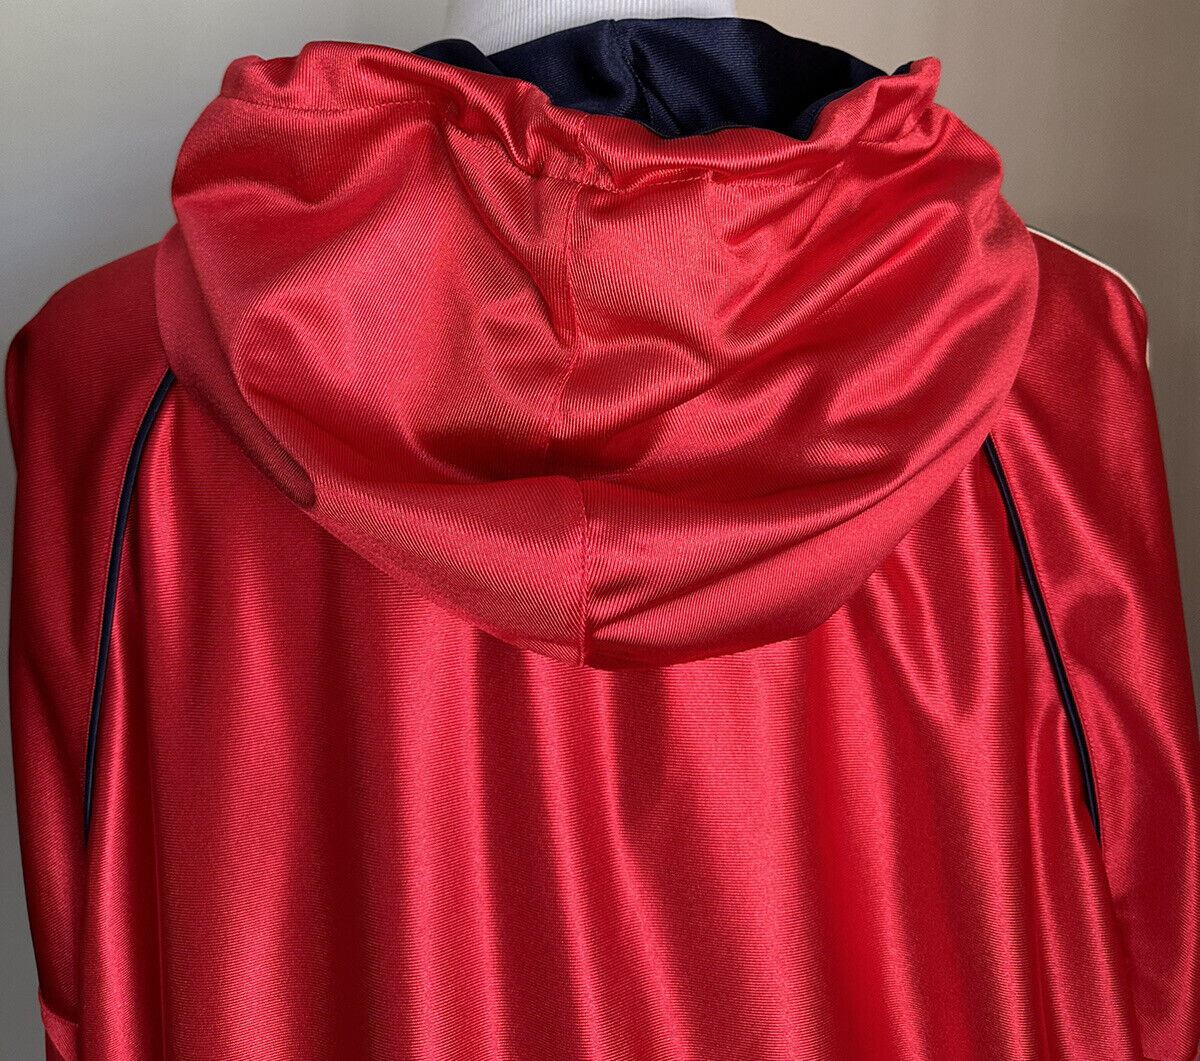 Neu mit Etikett: 1550 $ Gucci Herren-Trainingsjacke aus technischem Polyester, rot, Größe XXL